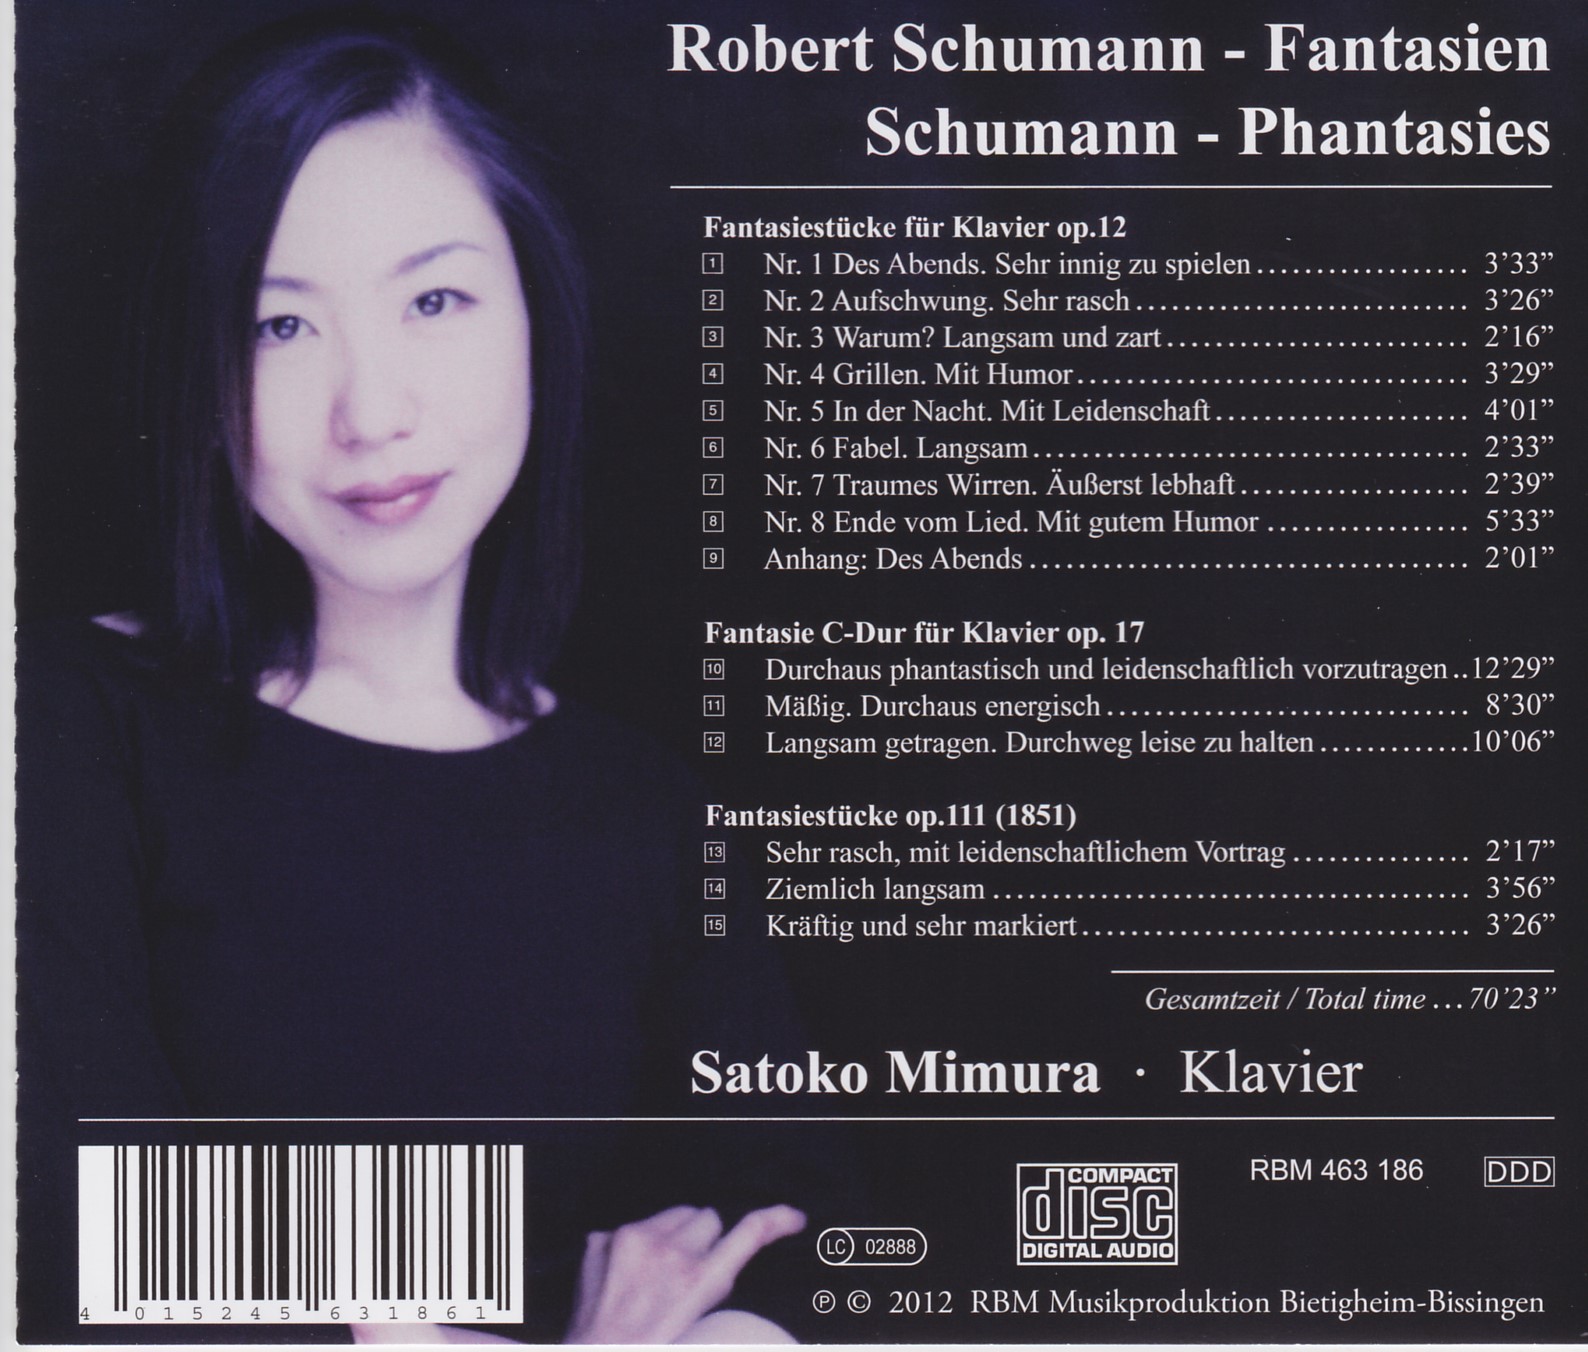 Robert Schumann - Fantasien / Schumann - Phantasies